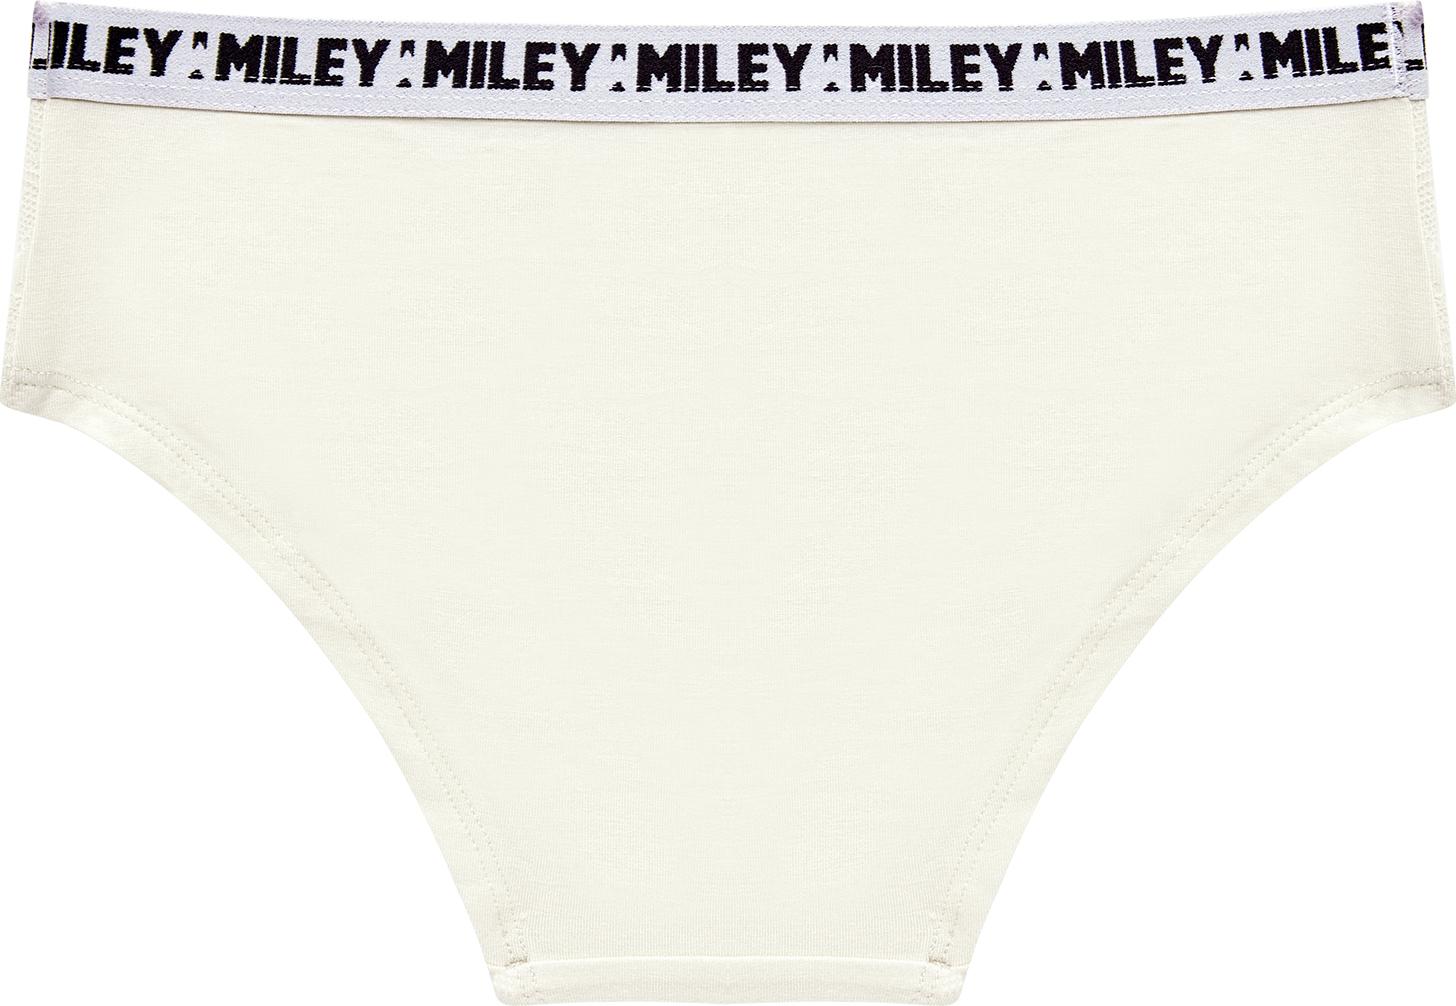 Bộ 2 Quần Lót Nữ Cotton Phối Ren Miley Lingerie FCB_04